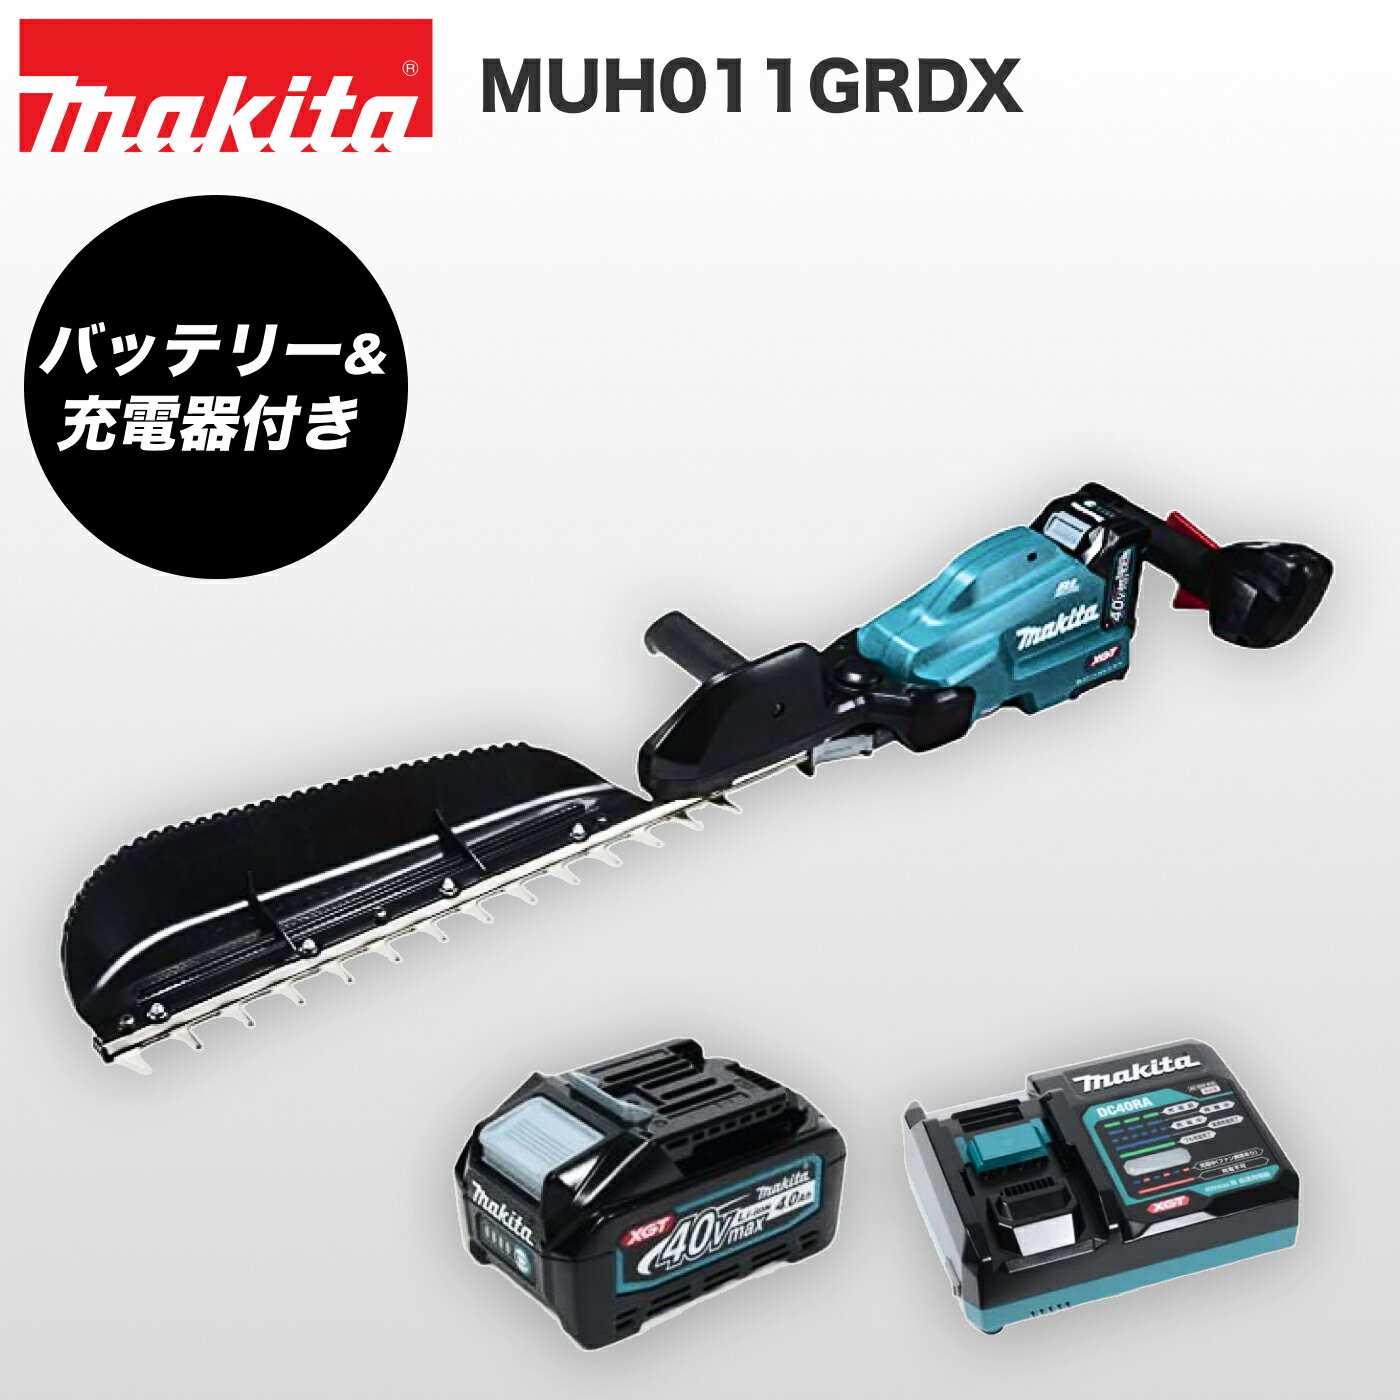 マキタ 充電式ヘッジトリマー MUH011GRDX 片刃式 刃物長600mm